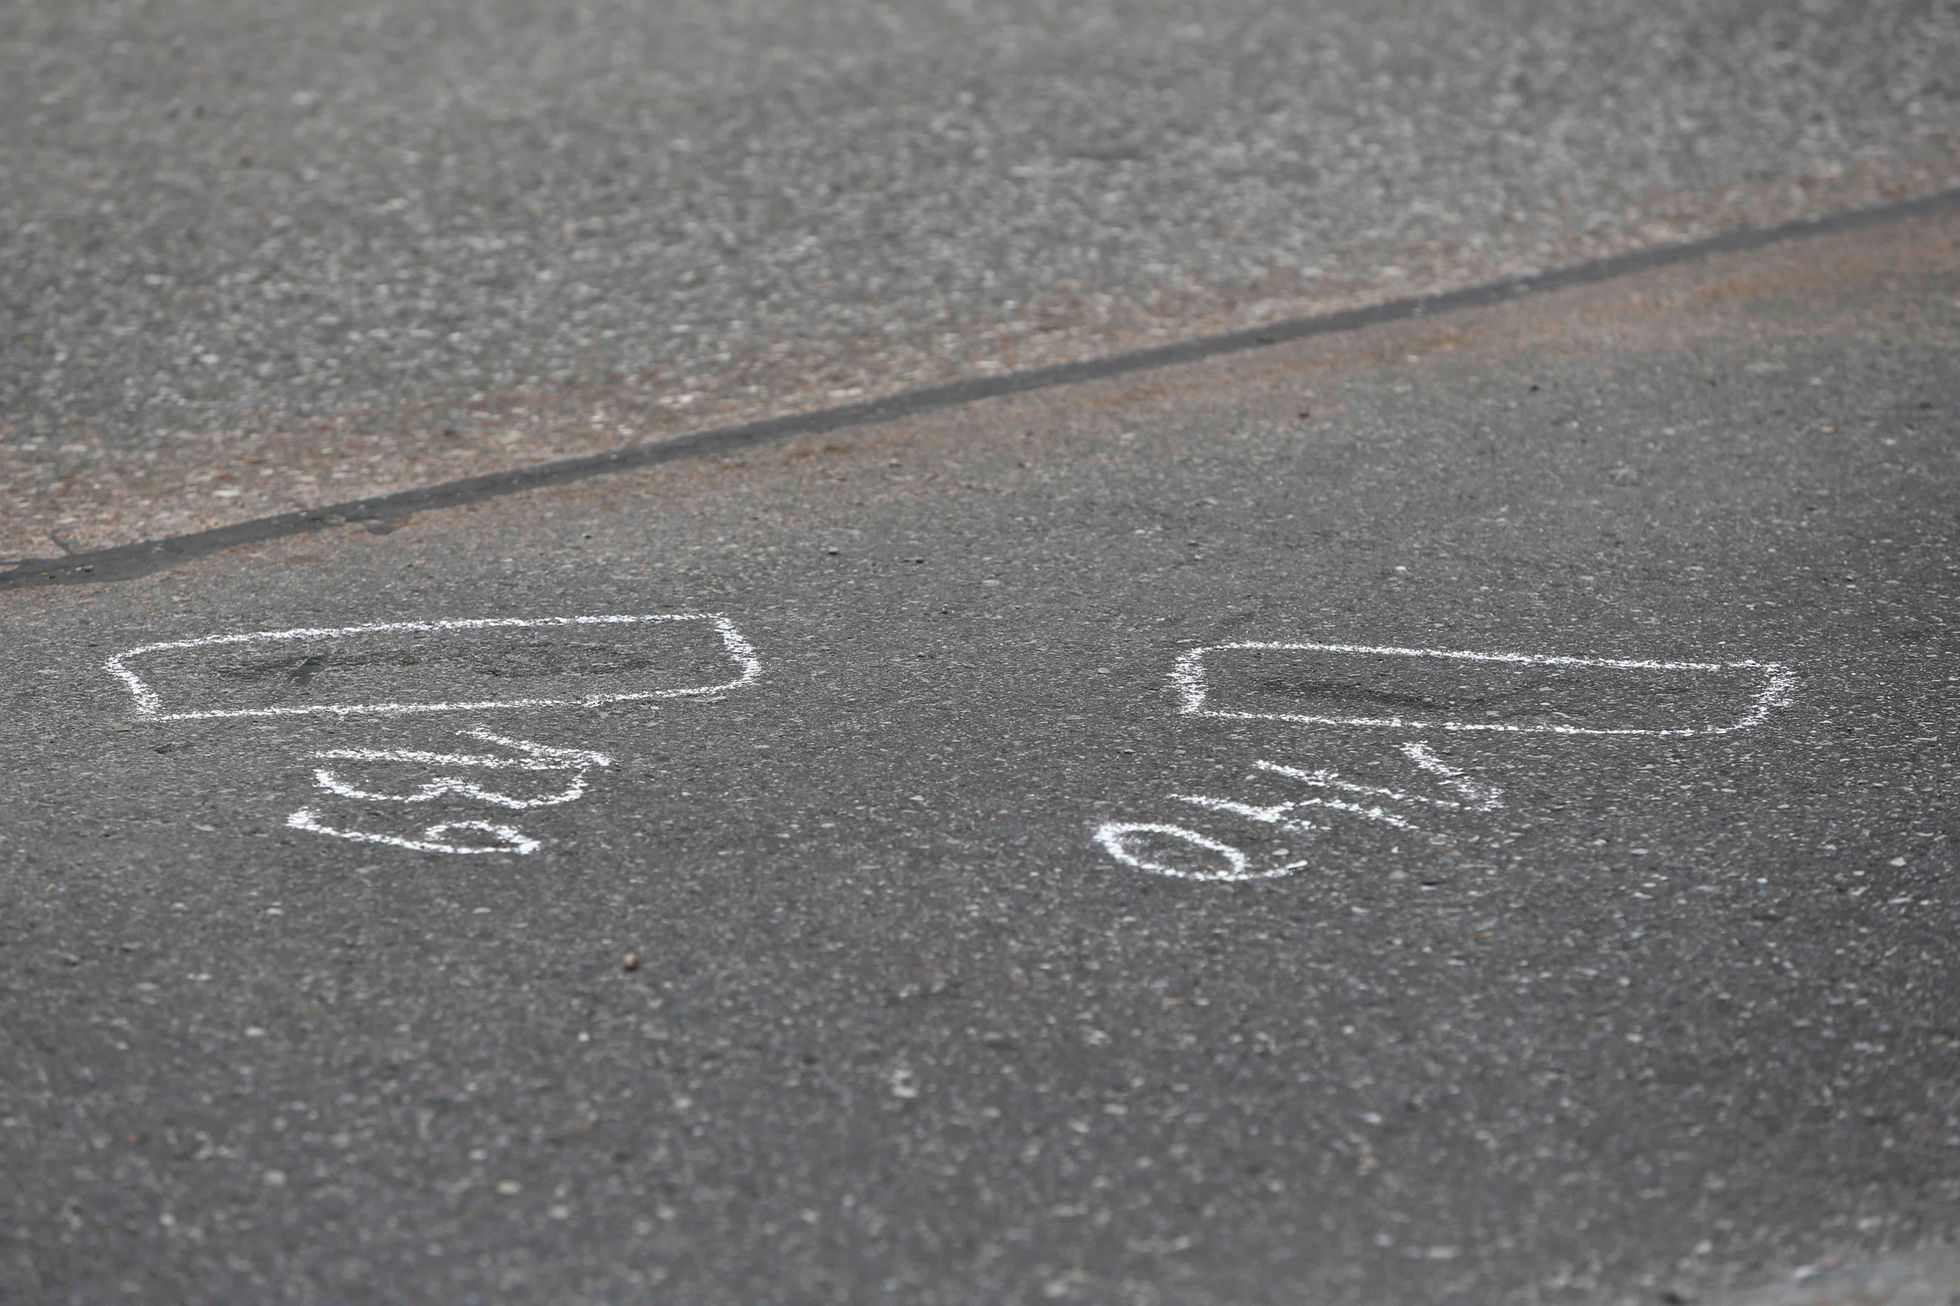 Stopy, označené vyšetřovateli v Grafingu